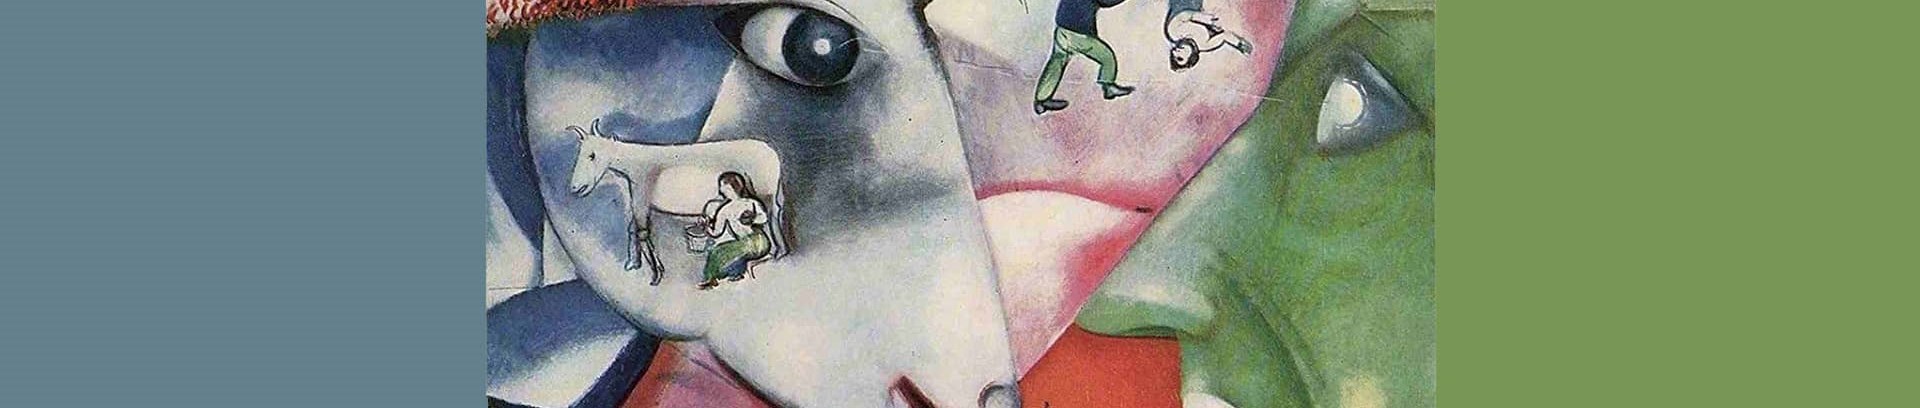 Marc Chagall billede ved kunst fra Kulturhøjskolen hos FOF Aarhus